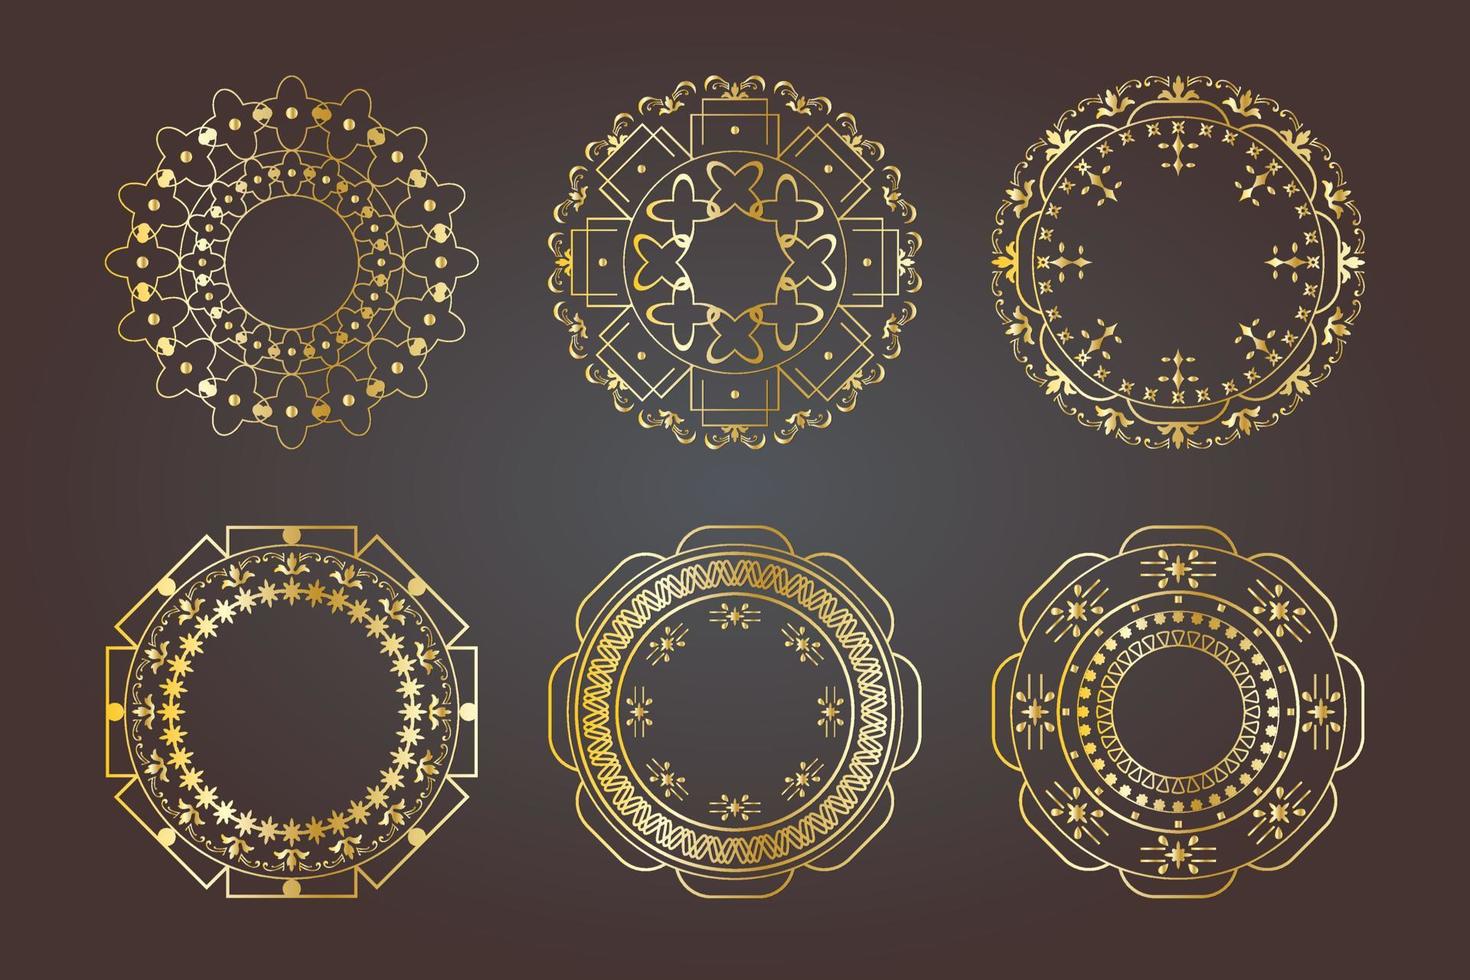 elemento dorado lujo real ornamento circular floral victoriano vector